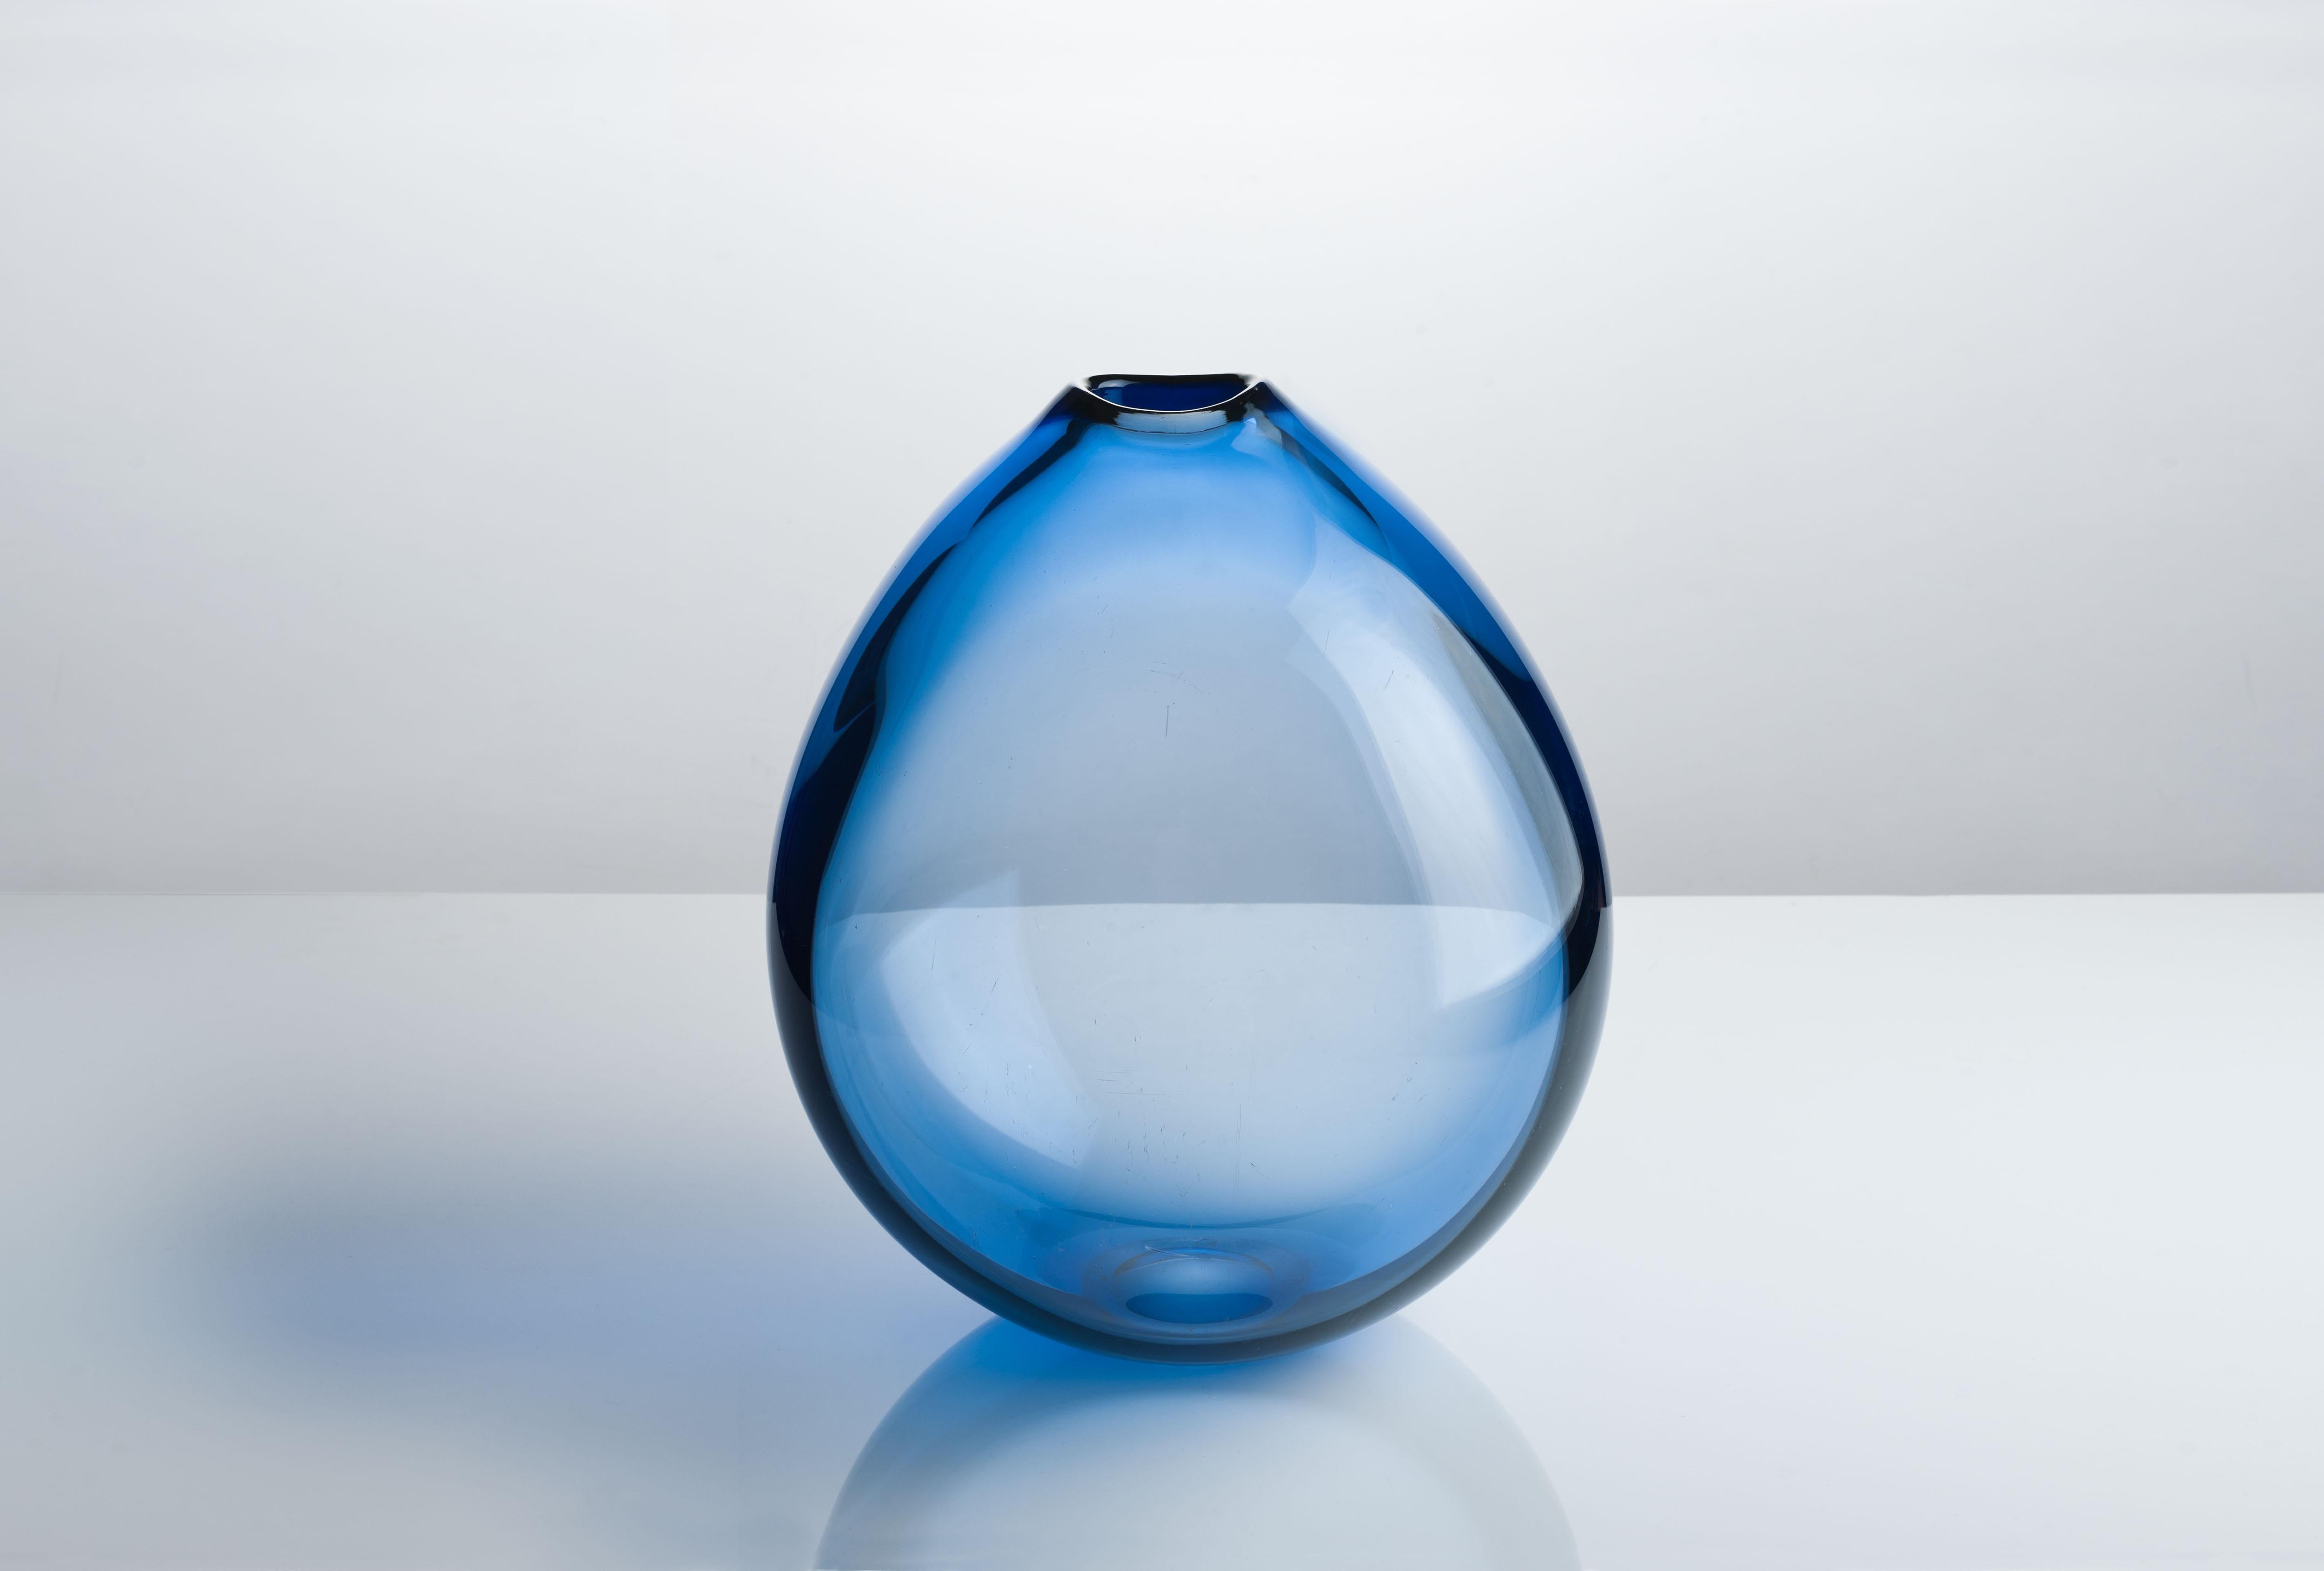 Sehr seltene große saphirblaue 'Dråbe'-Vase aus dem Jahr 1959. Ein ikonisches Design des dänischen Glasdesigners Per Lütken, mundgeblasen bei Holmegaard Dänemark.
Der markante und charakteristische Hals der Vase zeigt den einzigartigen Charakter und